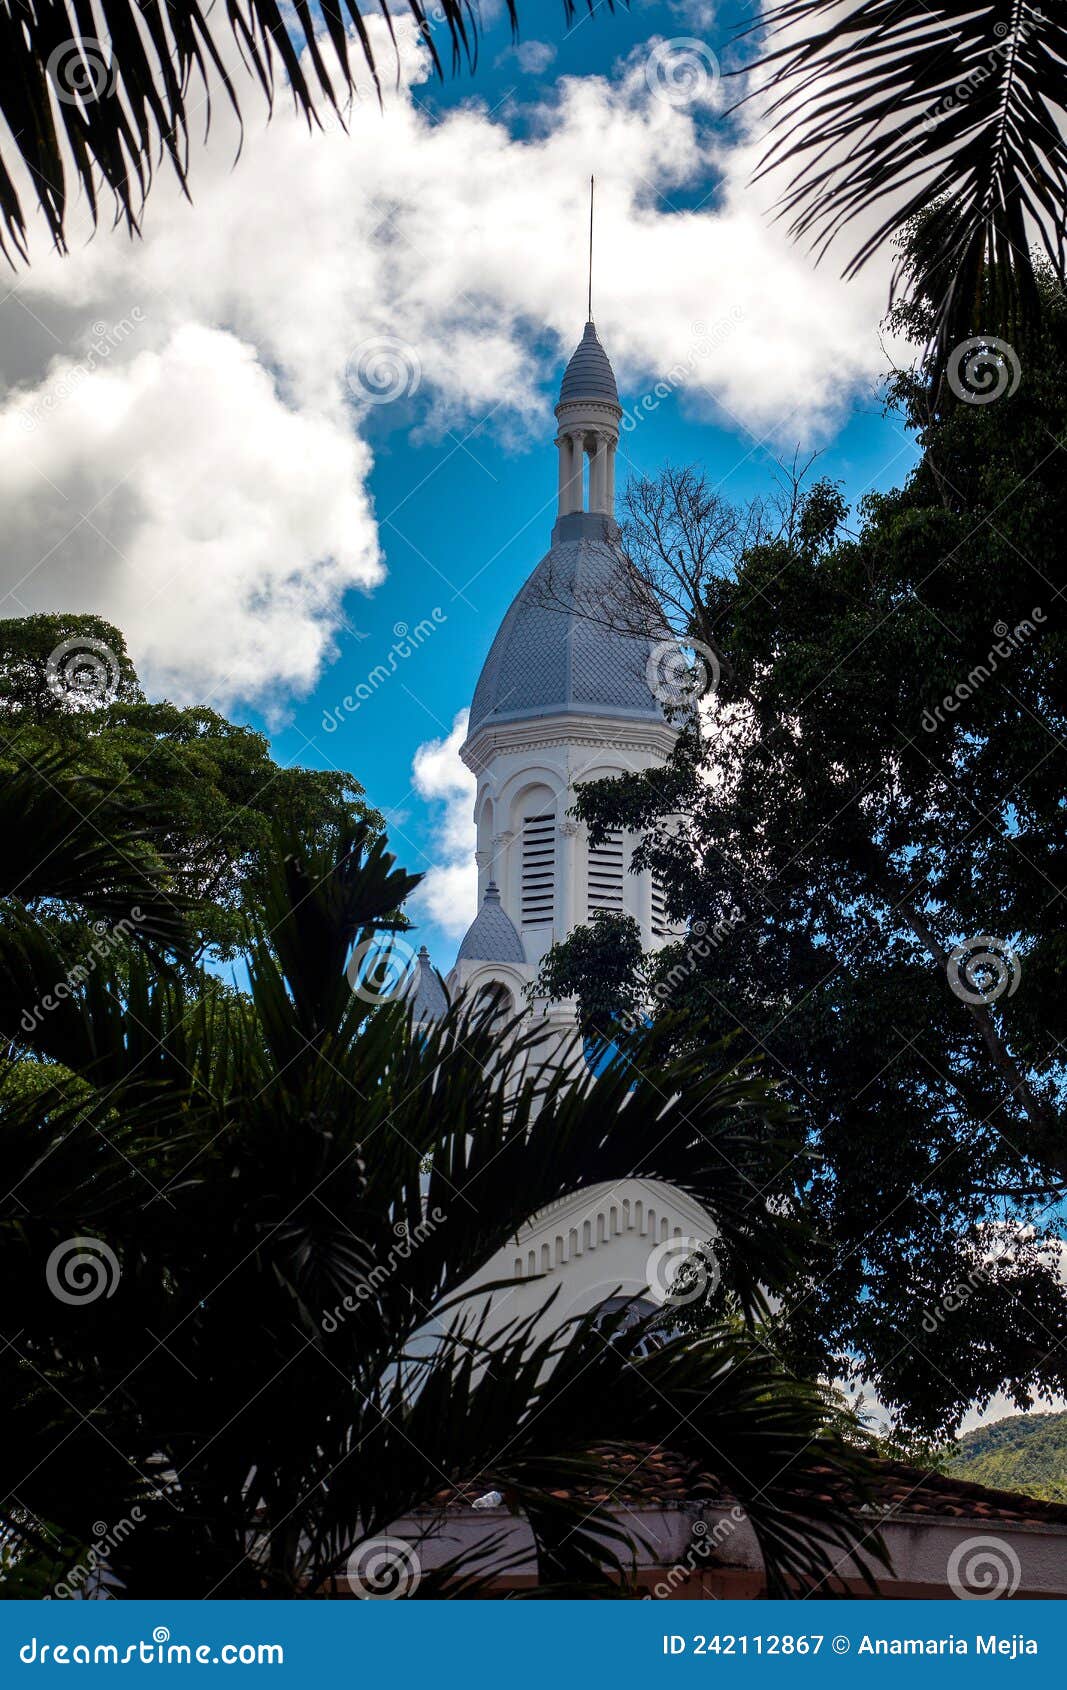 beautiful church of saint joseph at la union in the region of valle del cauca in colombia